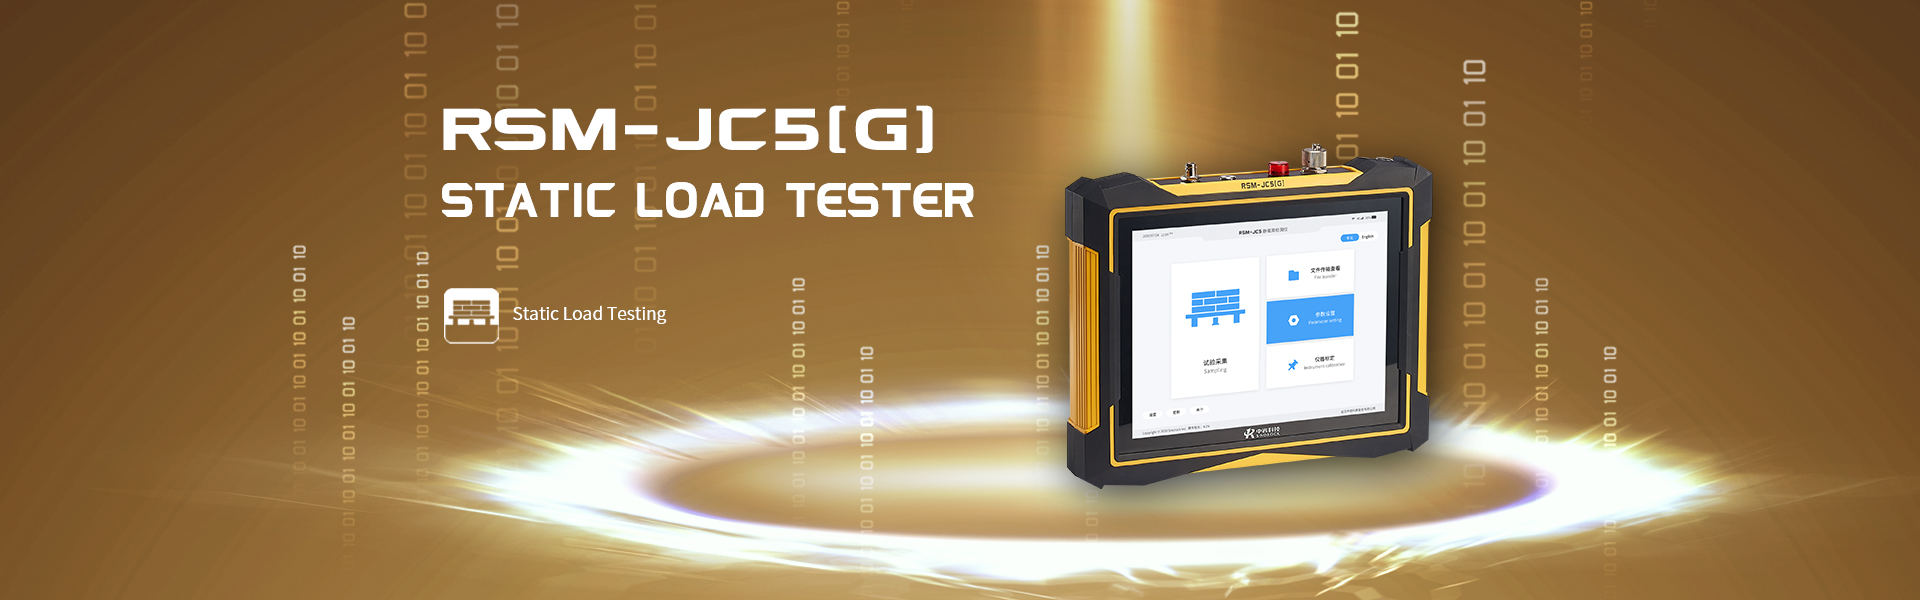 RSM-JC6 static load tester